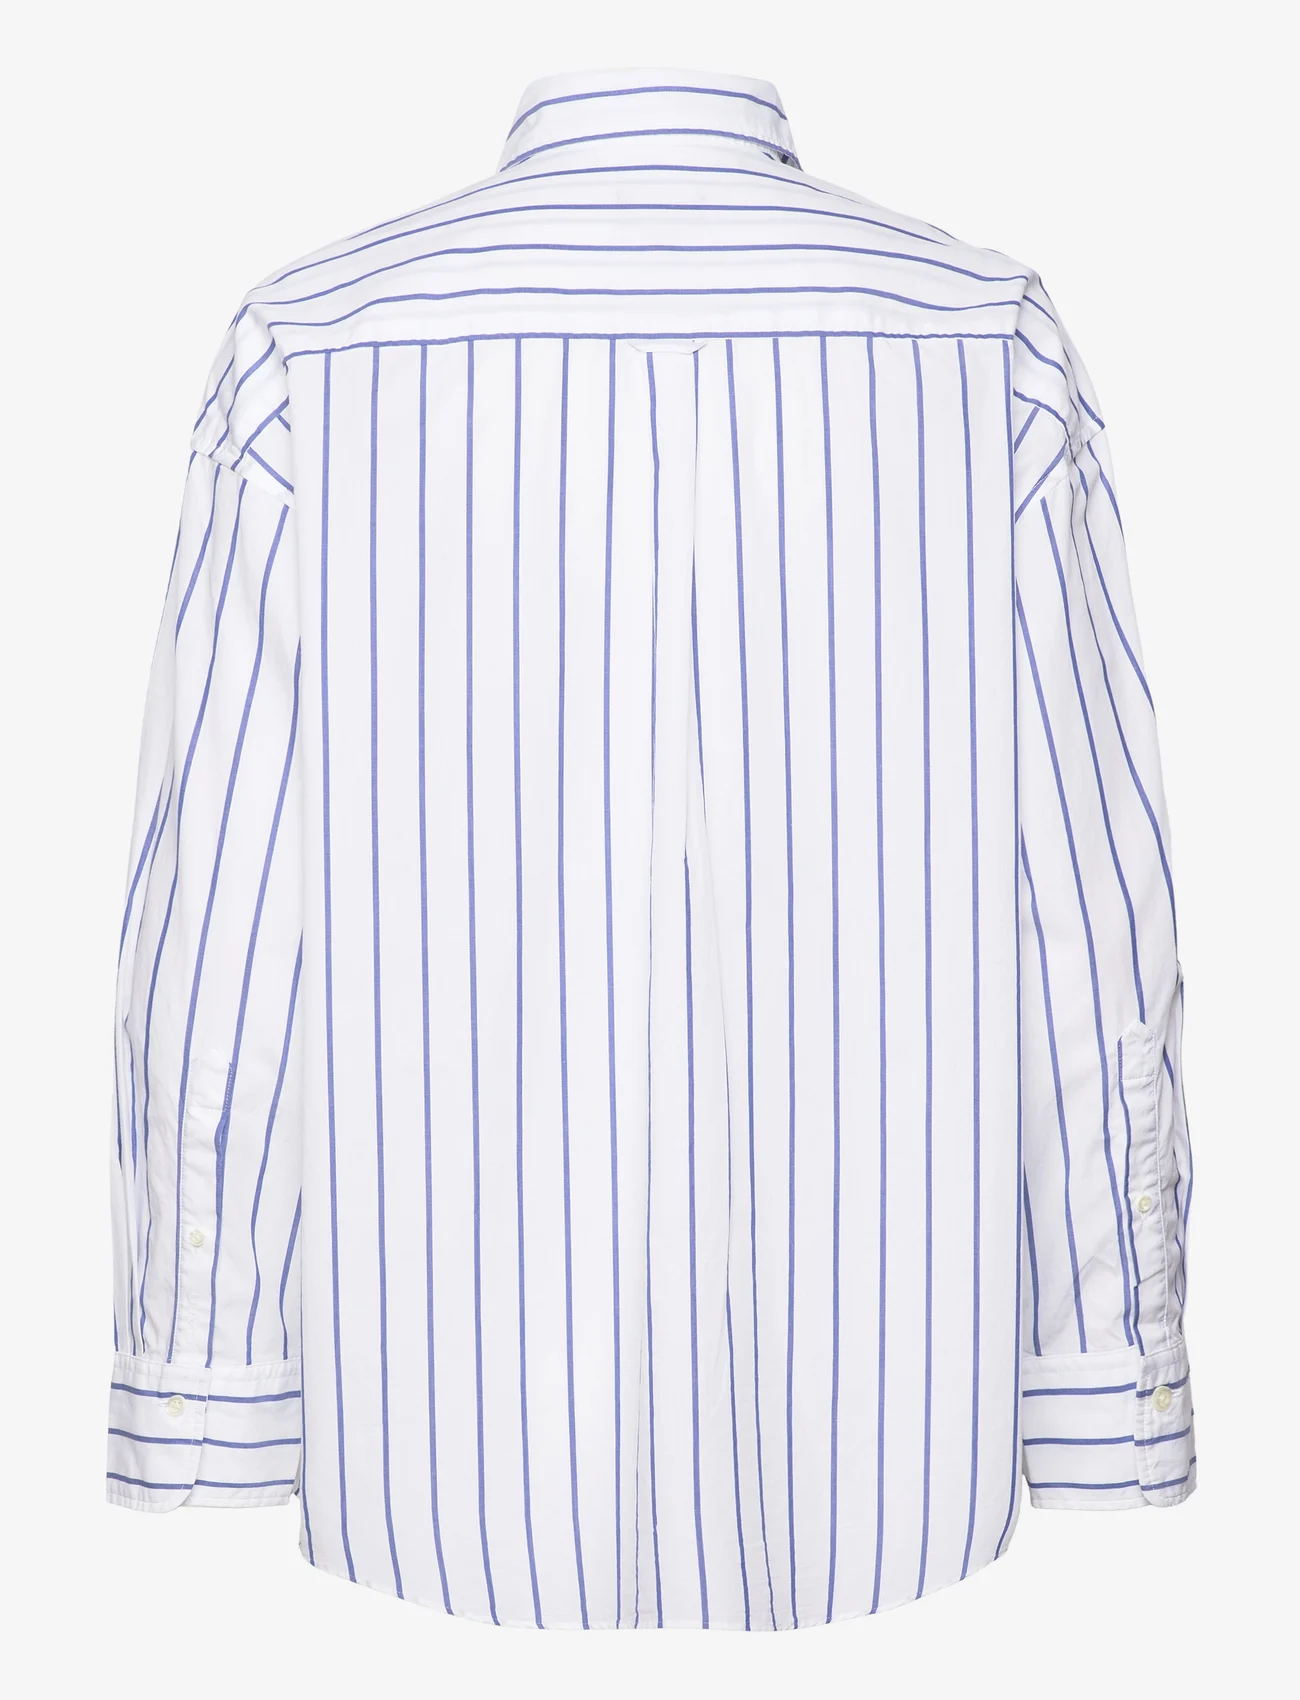 GANT - OS STRIPE SHIRT - langærmede skjorter - white - 1